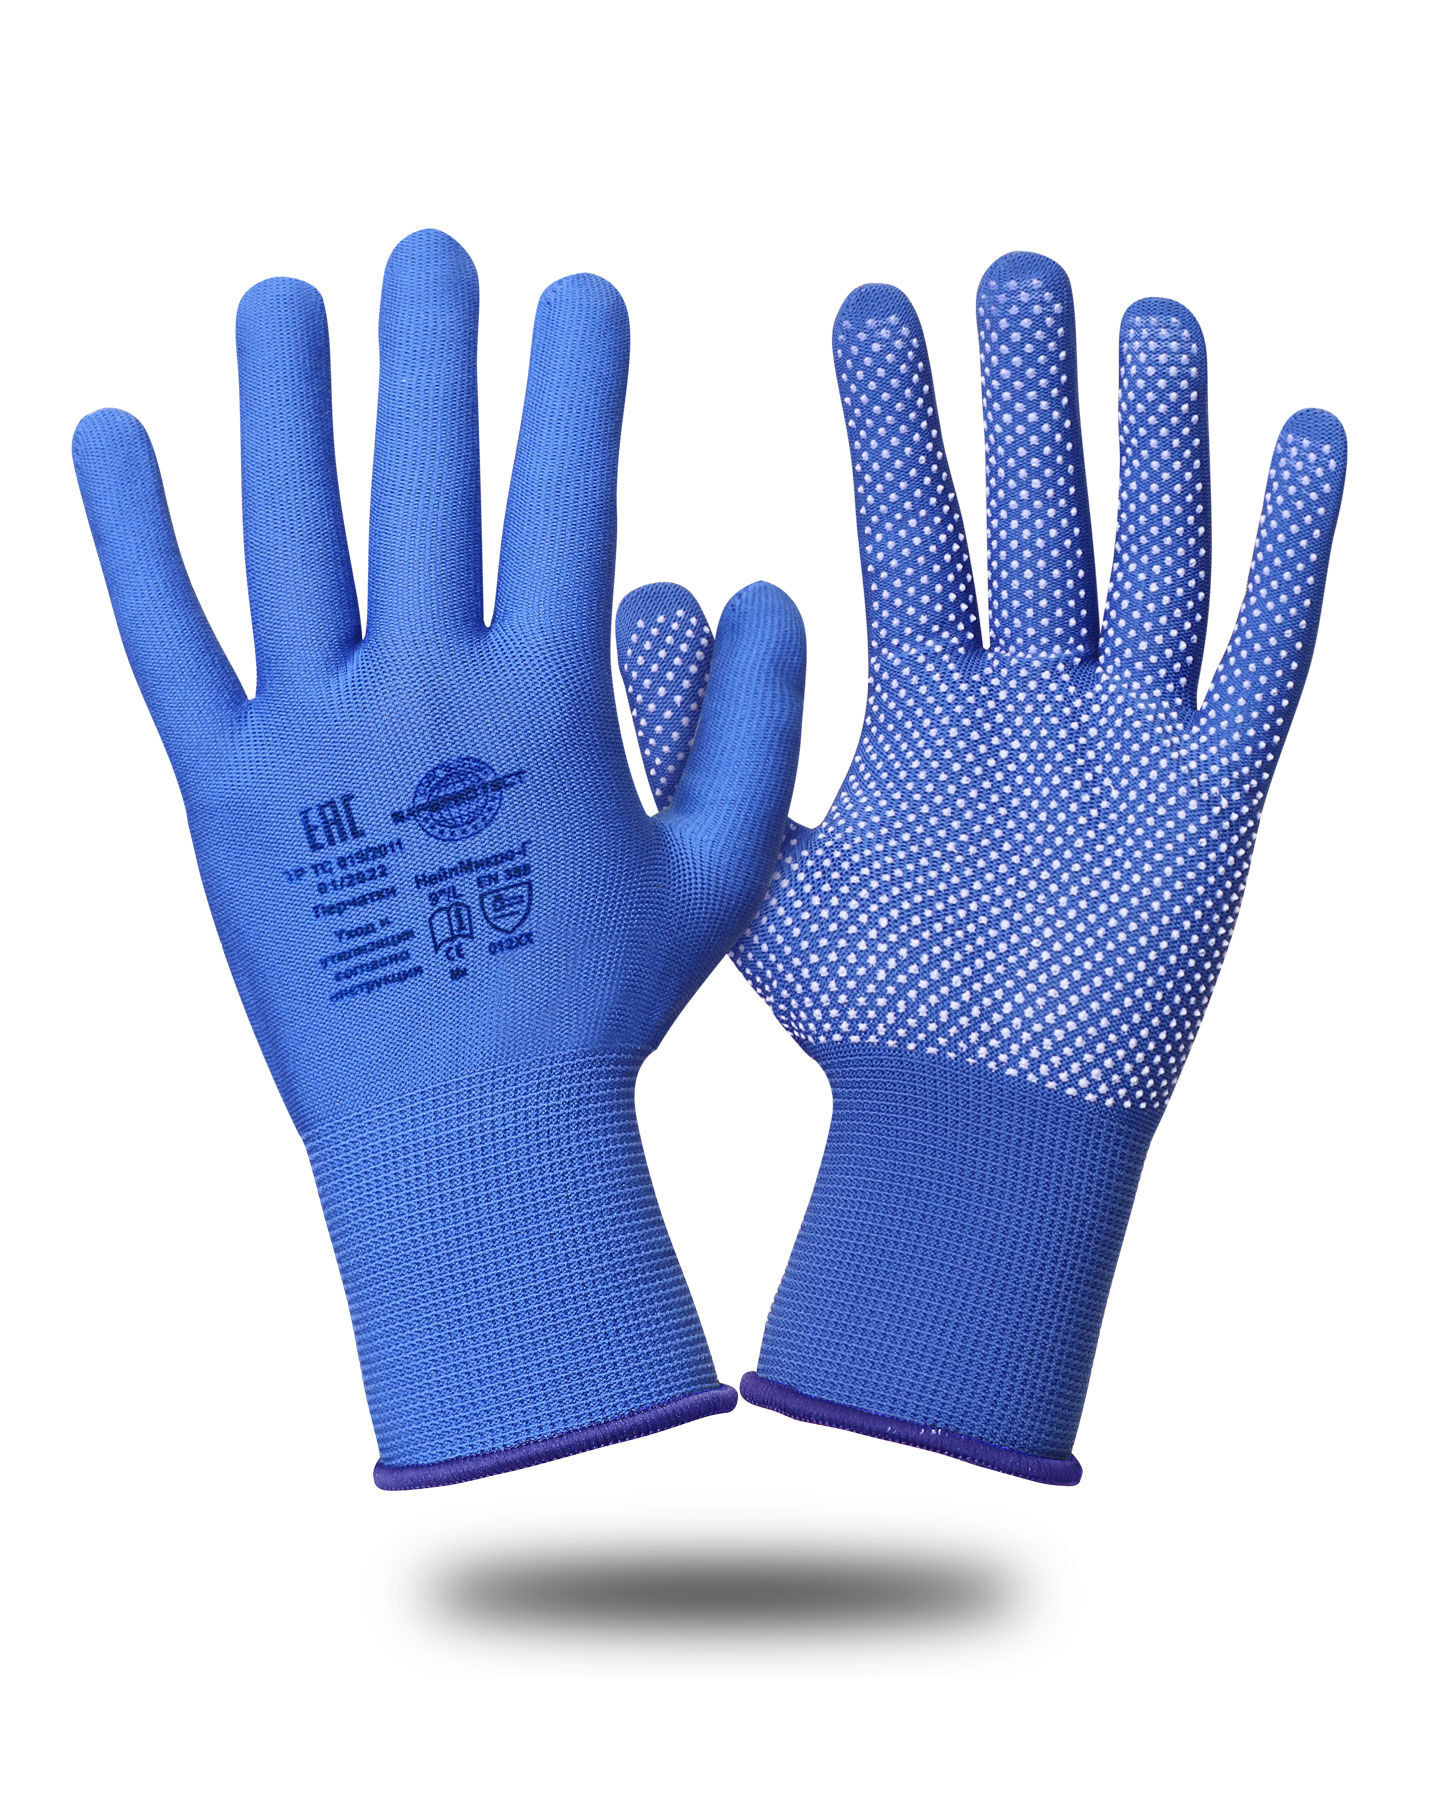 Перчатки Safeprotect НейпМикро-Г (нейлон+ПВХ-микроточка, голубой)